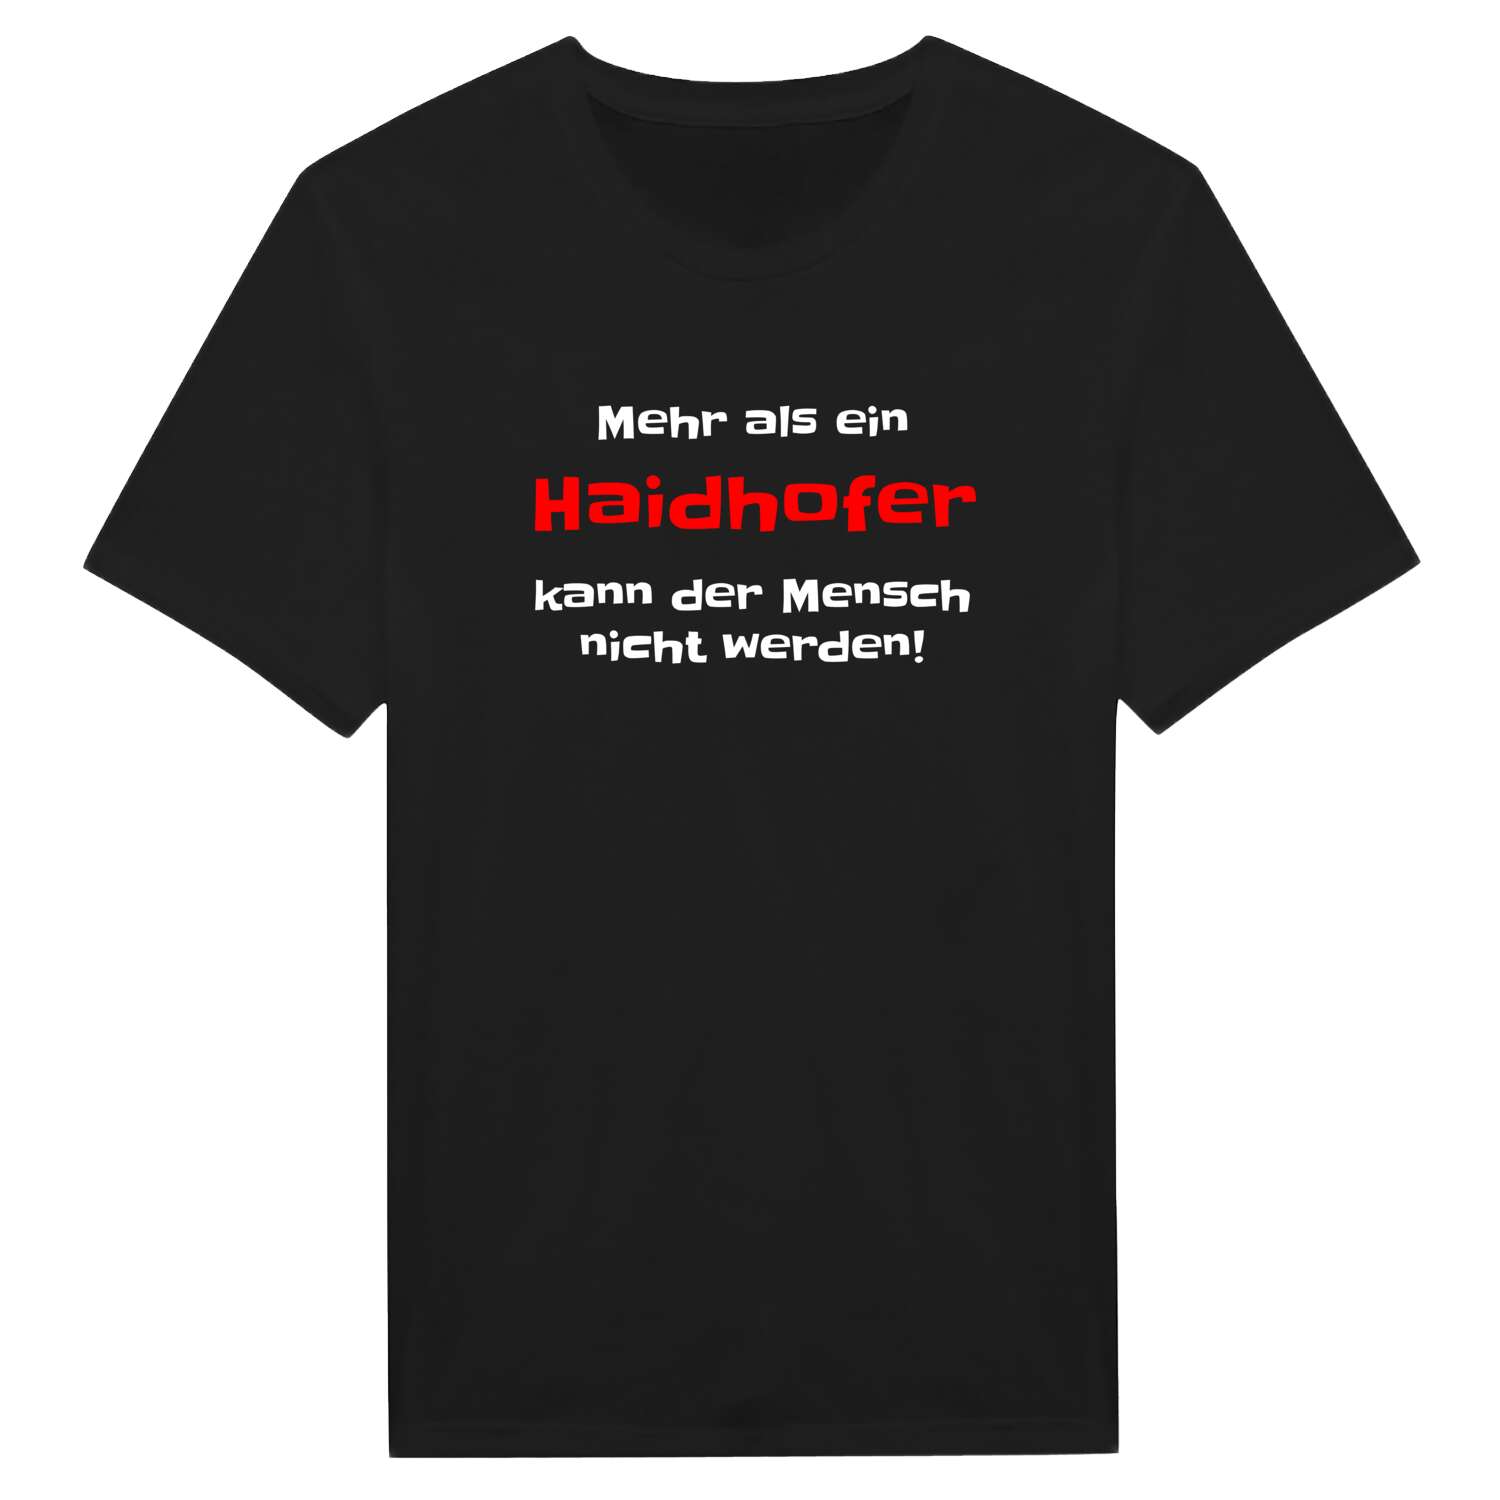 Haidhof T-Shirt »Mehr als ein«